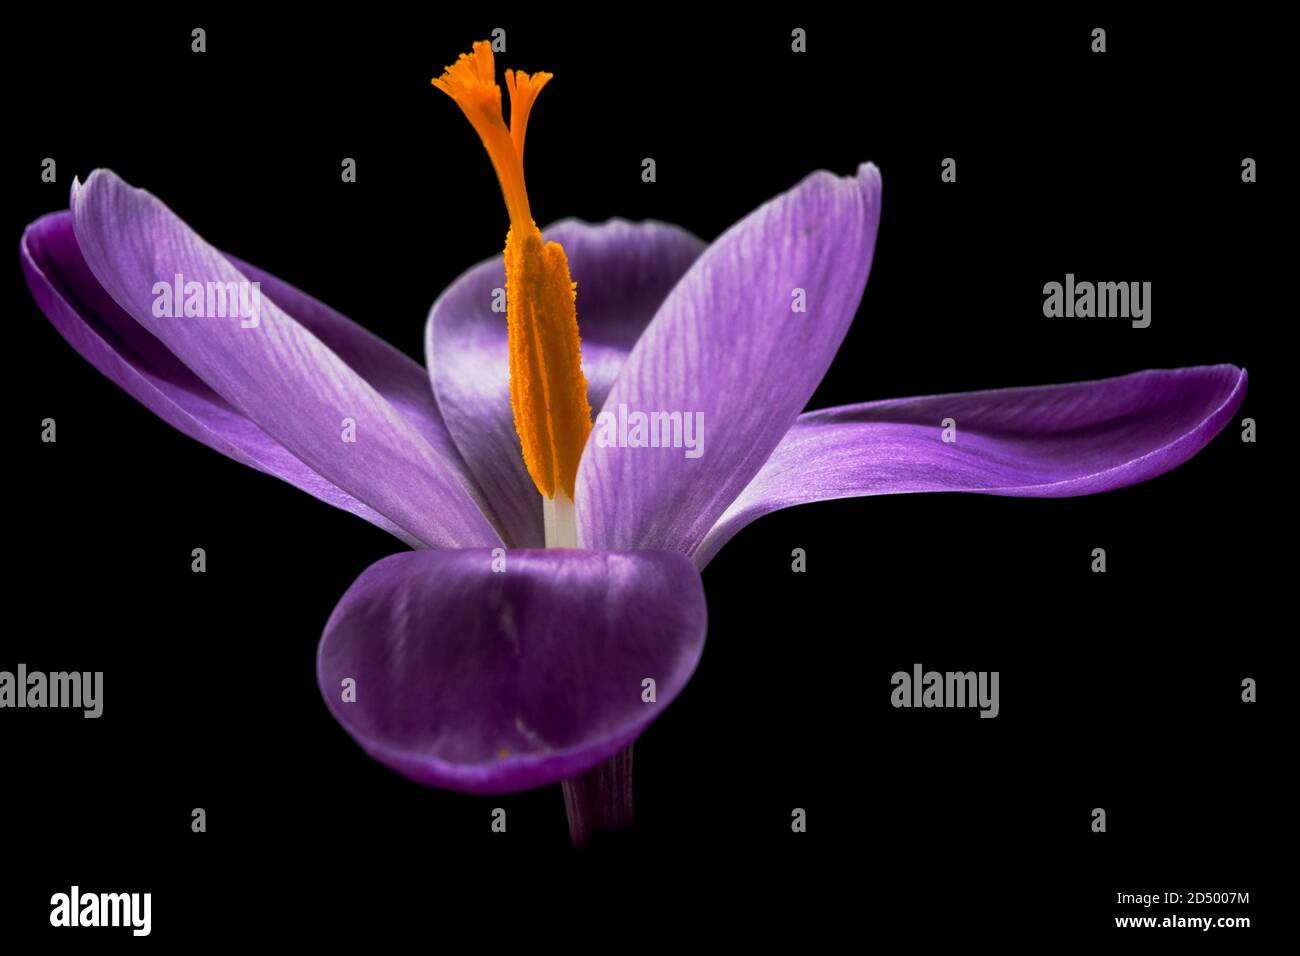 Dutch crocus, spring crocus (Crocus vernus, Crocus neapolitanus), flower against black background, Netherlands Stock Photo